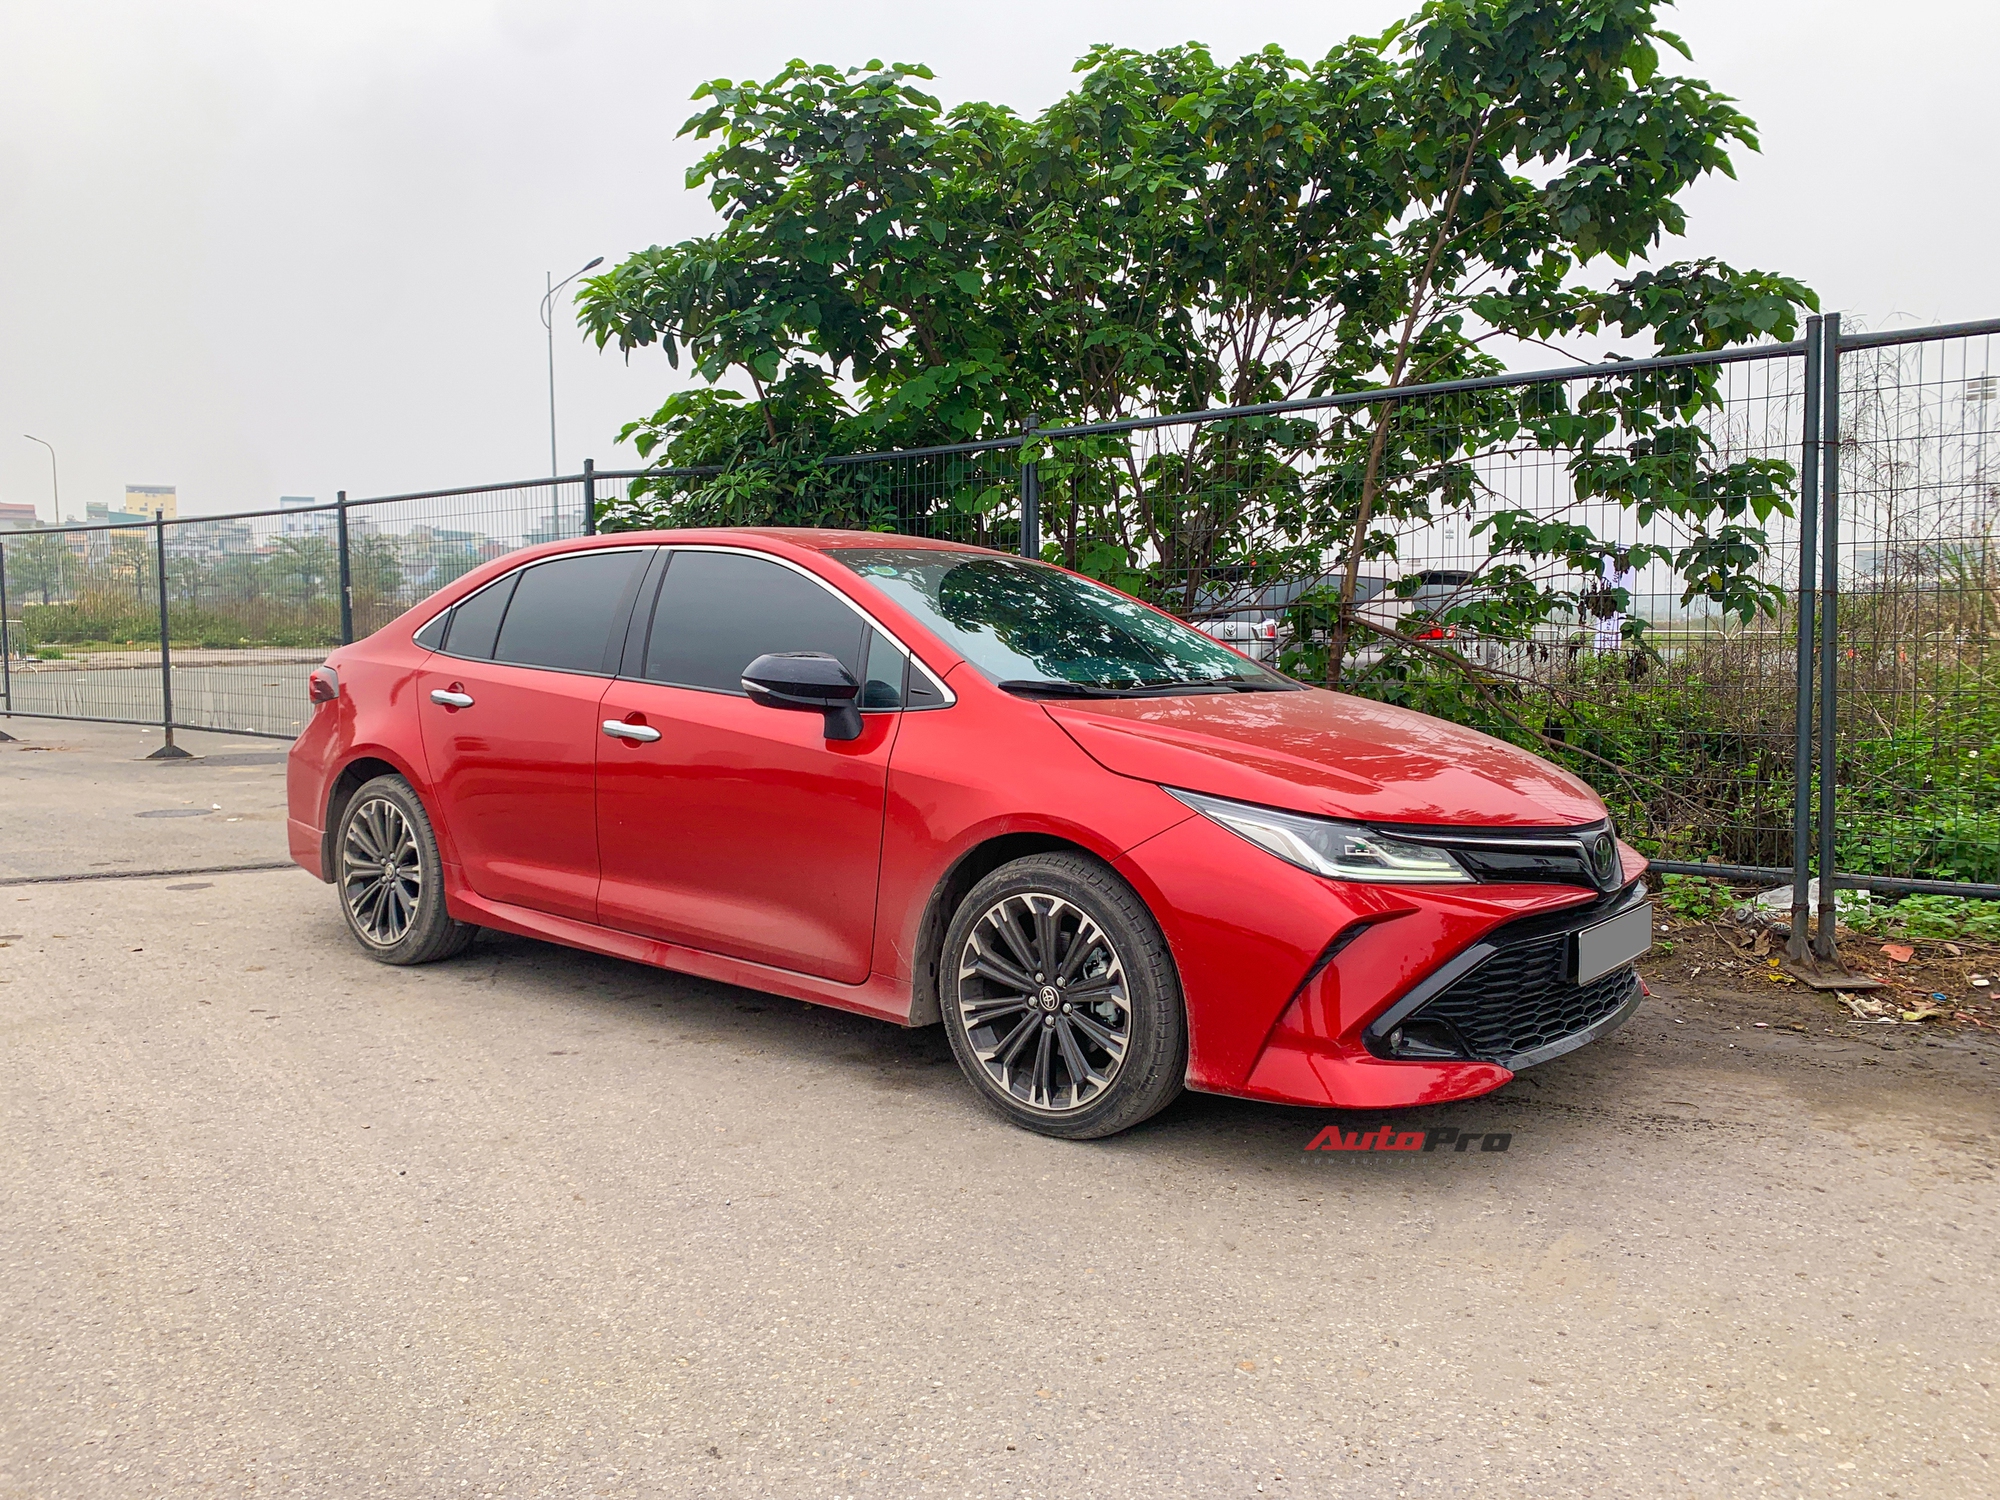 Toyota Corolla Altis GR Sport đầu tiên xuất hiện tại Việt Nam: Ngoại hình hầm hố khác hẳn phong cách ‘doanh nhân’, đấu Civic RS- Ảnh 2.